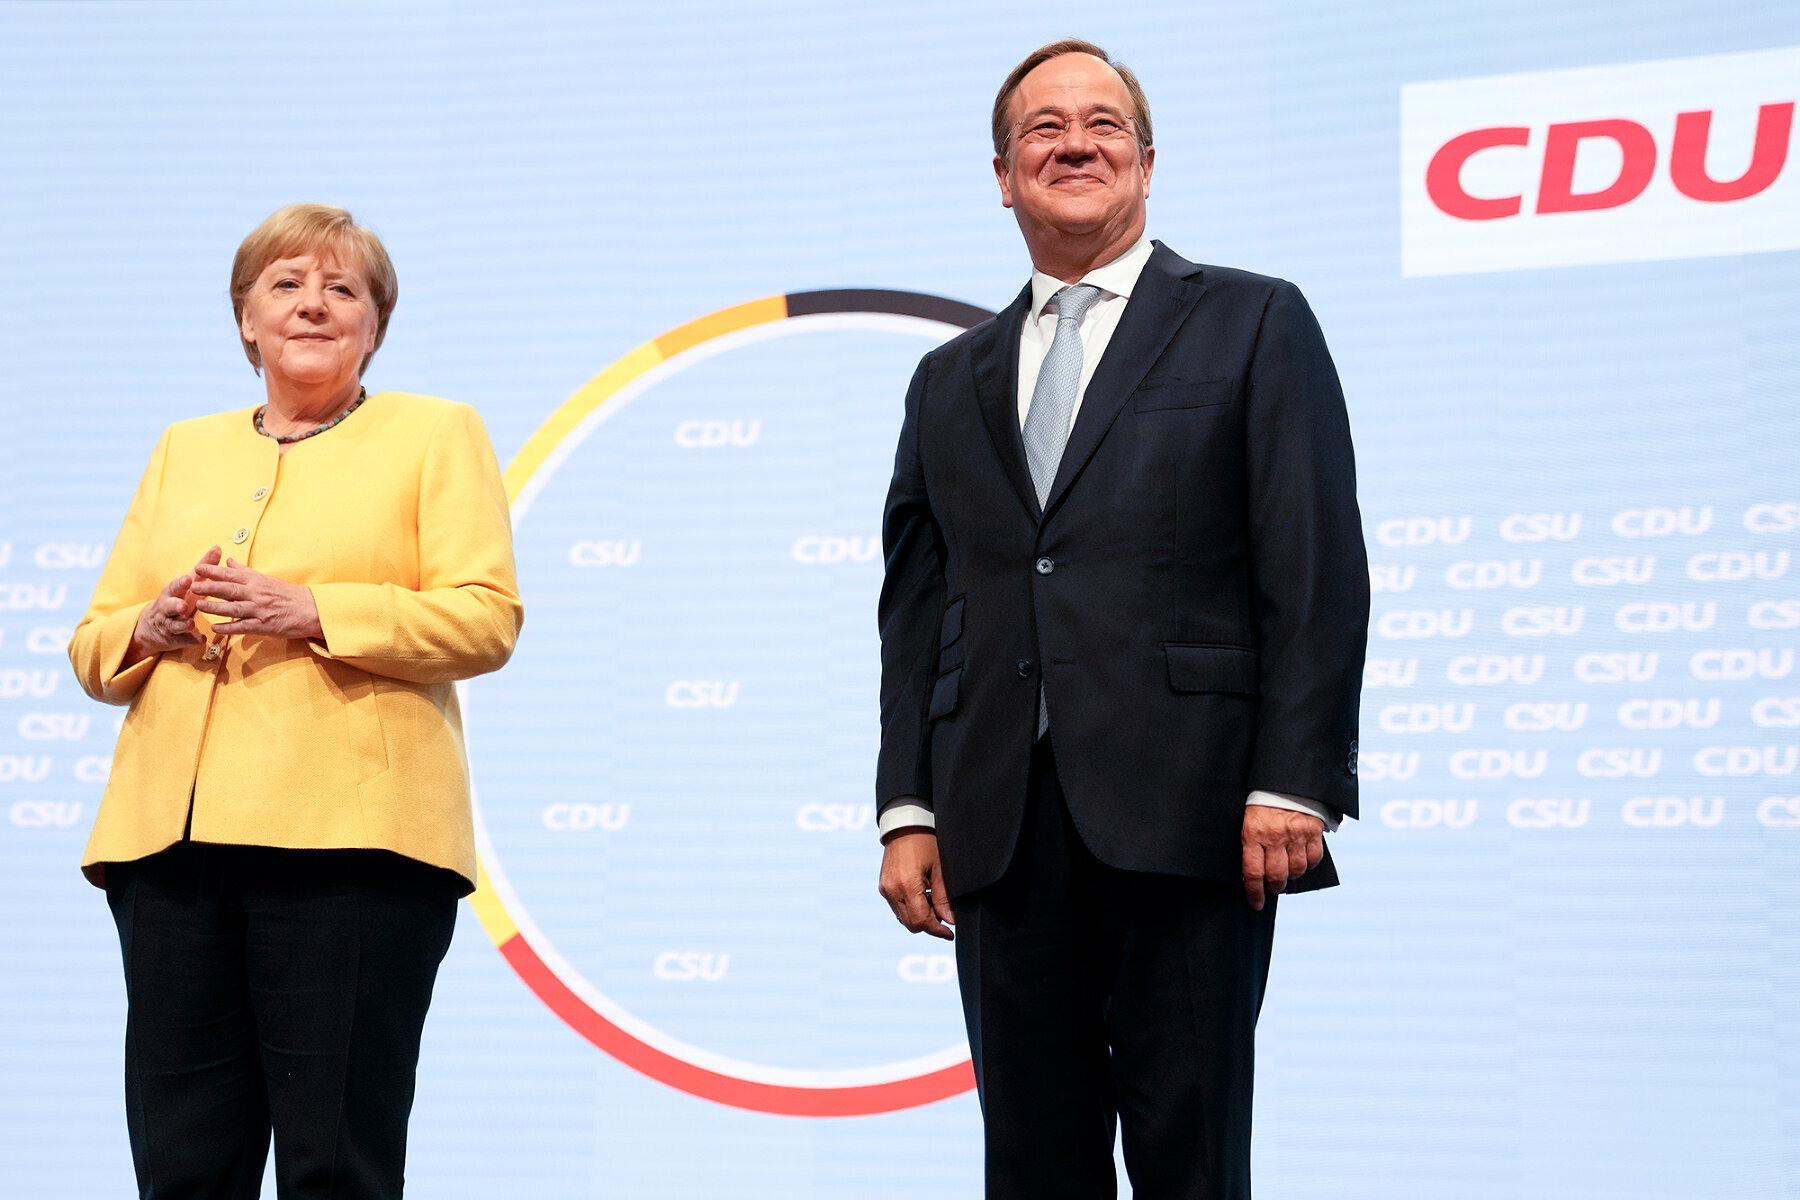 <p>Ангела Меркель и лидер ХДС Армин Лашет на съезде партии в начале избирательной кампании, Берлин, 21 августа 2021 года.</p>

<p>Армин Лашет стал главным претендентом на пост Меркель на грядущих выборах.</p>